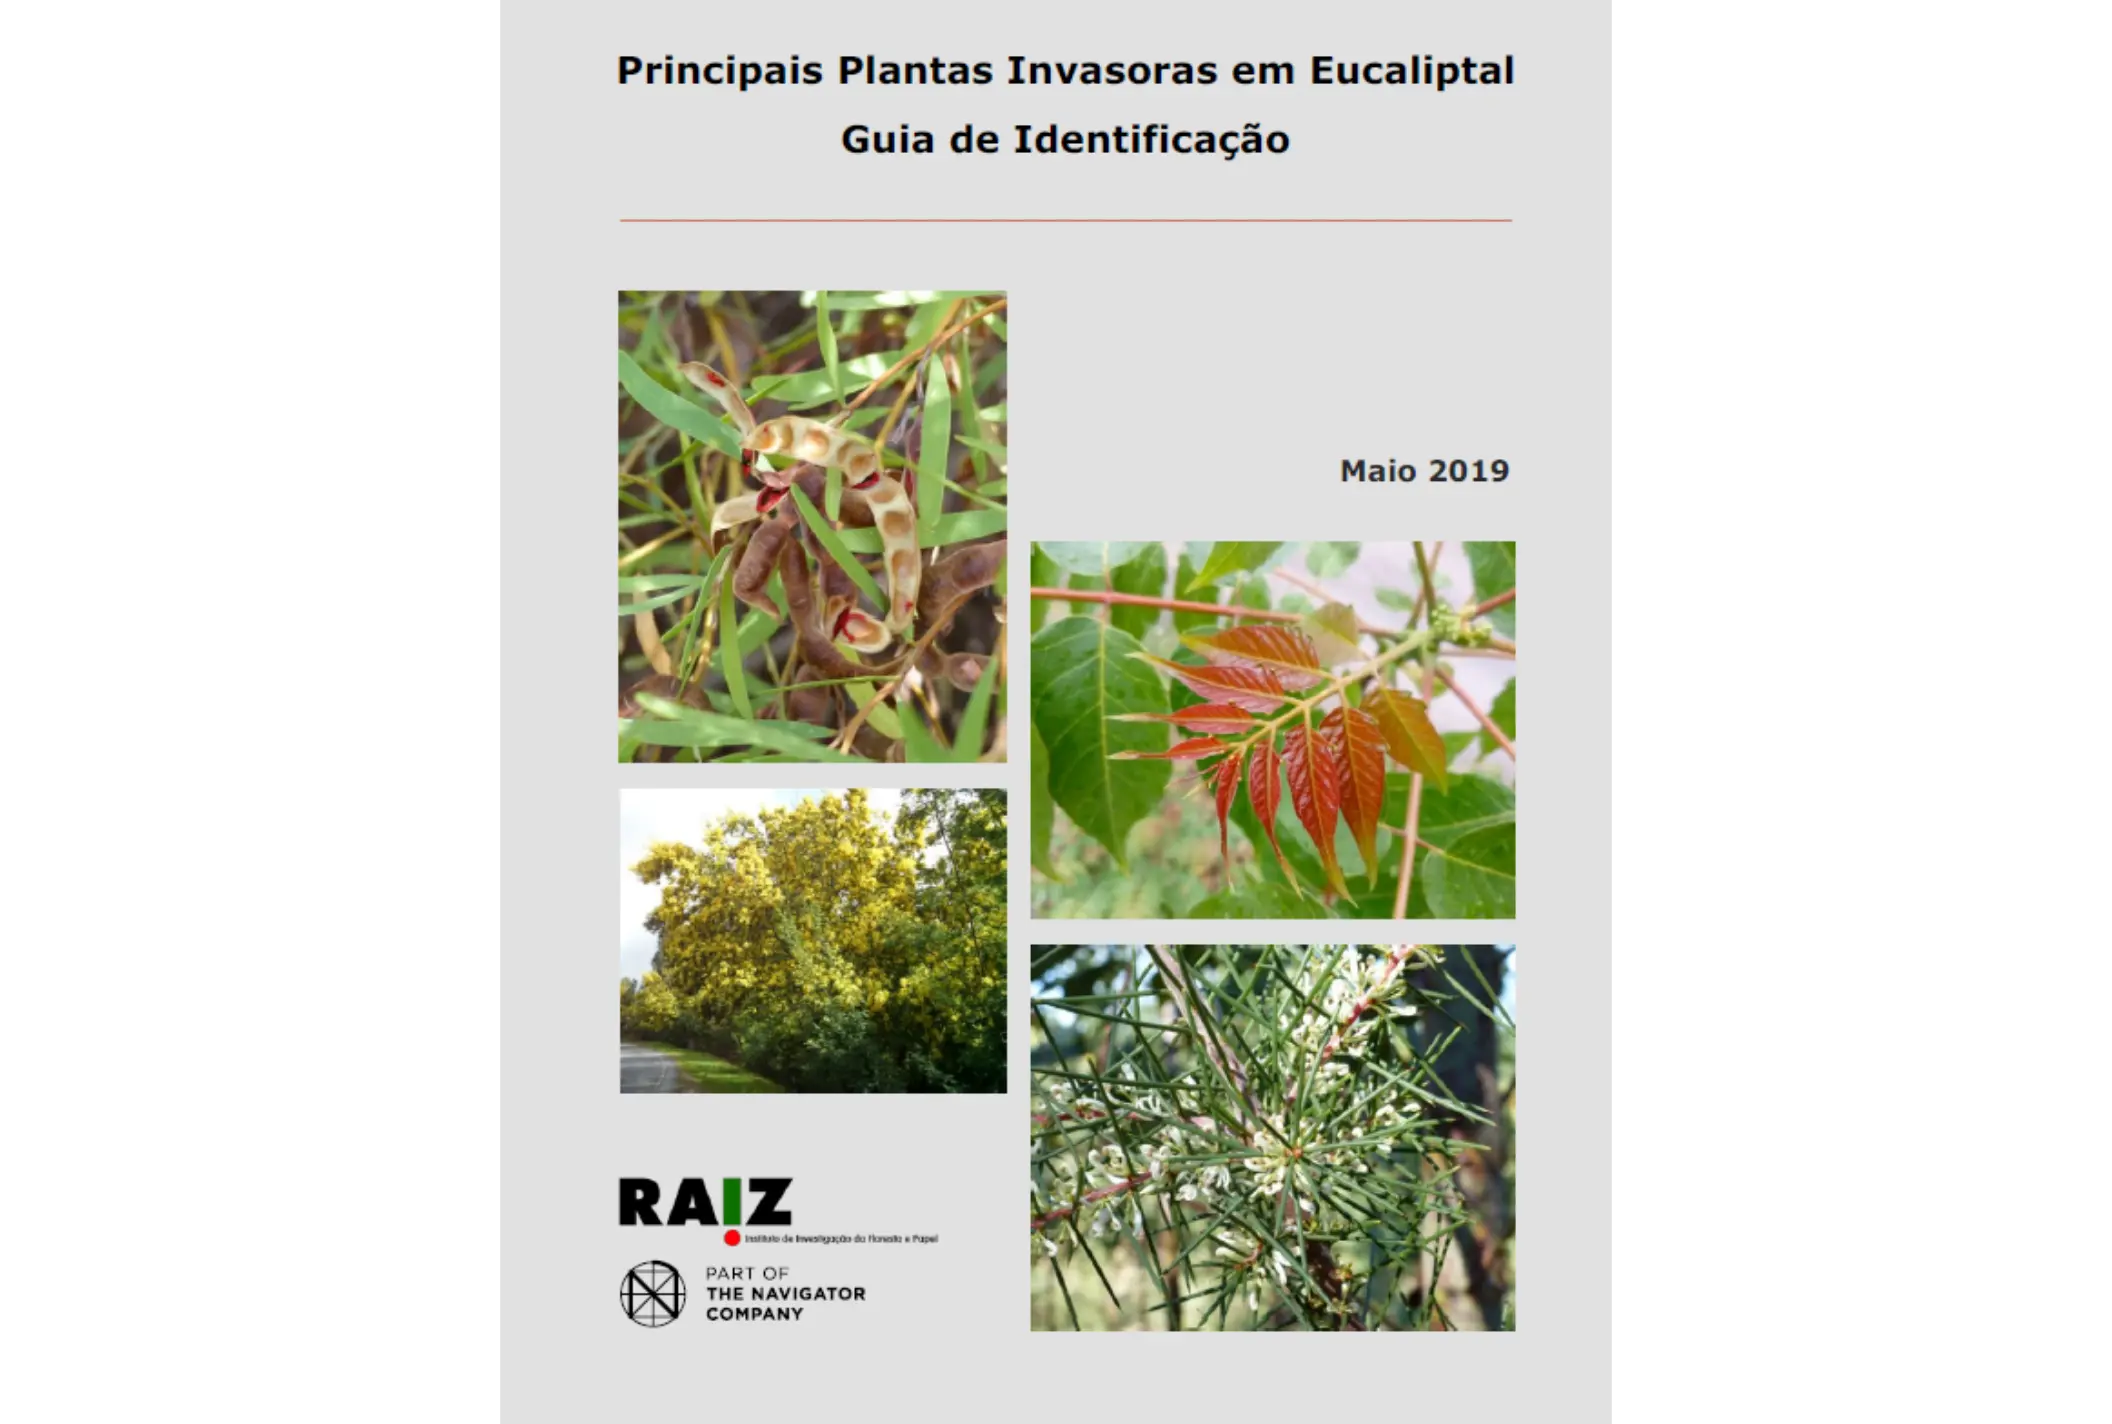 Guia de identificação das principais plantas invasoras em eucaliptal